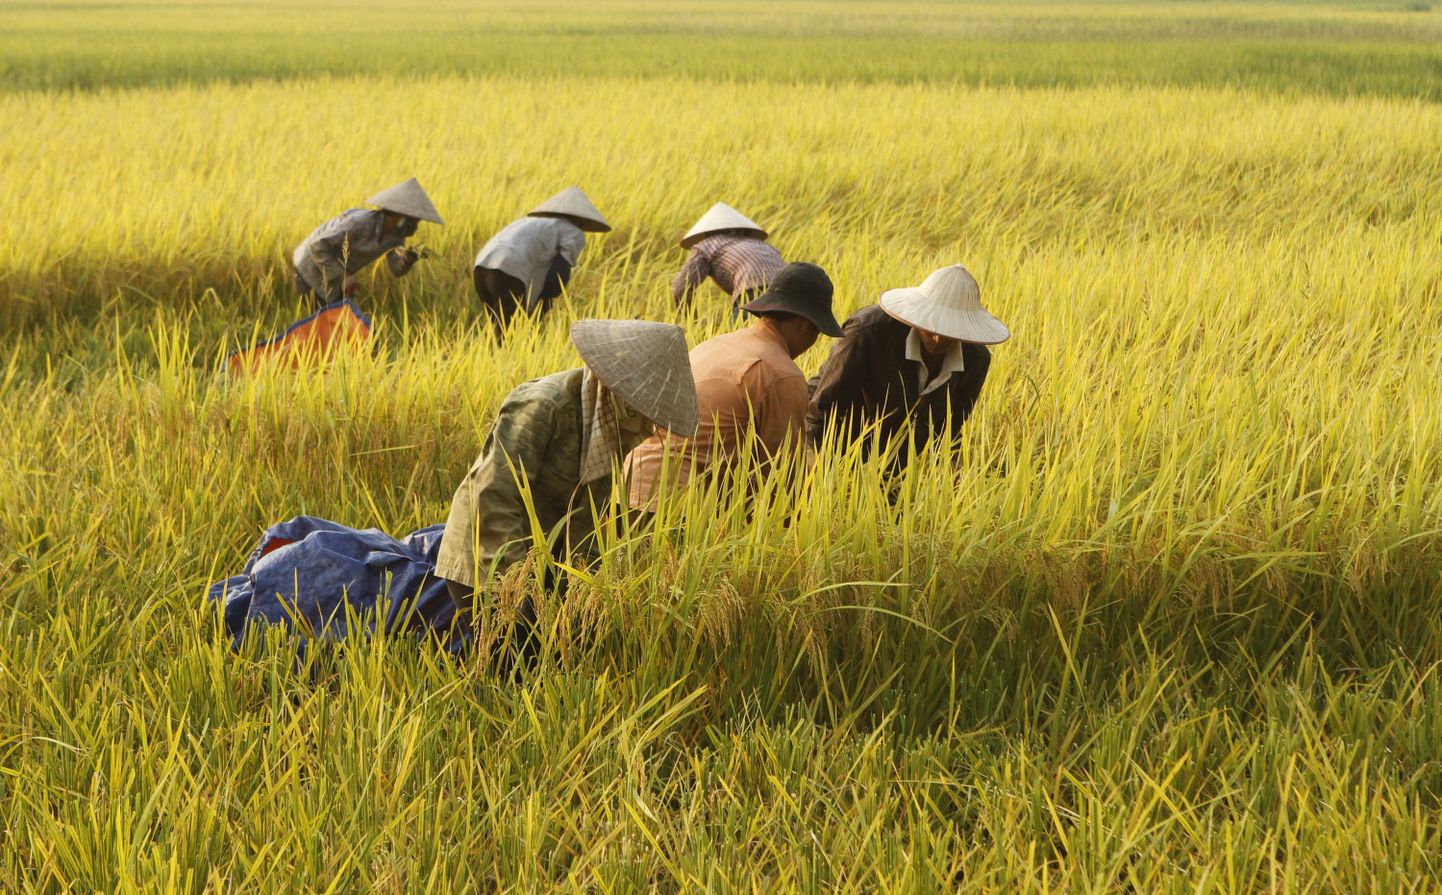 Vietnami riisipõld.